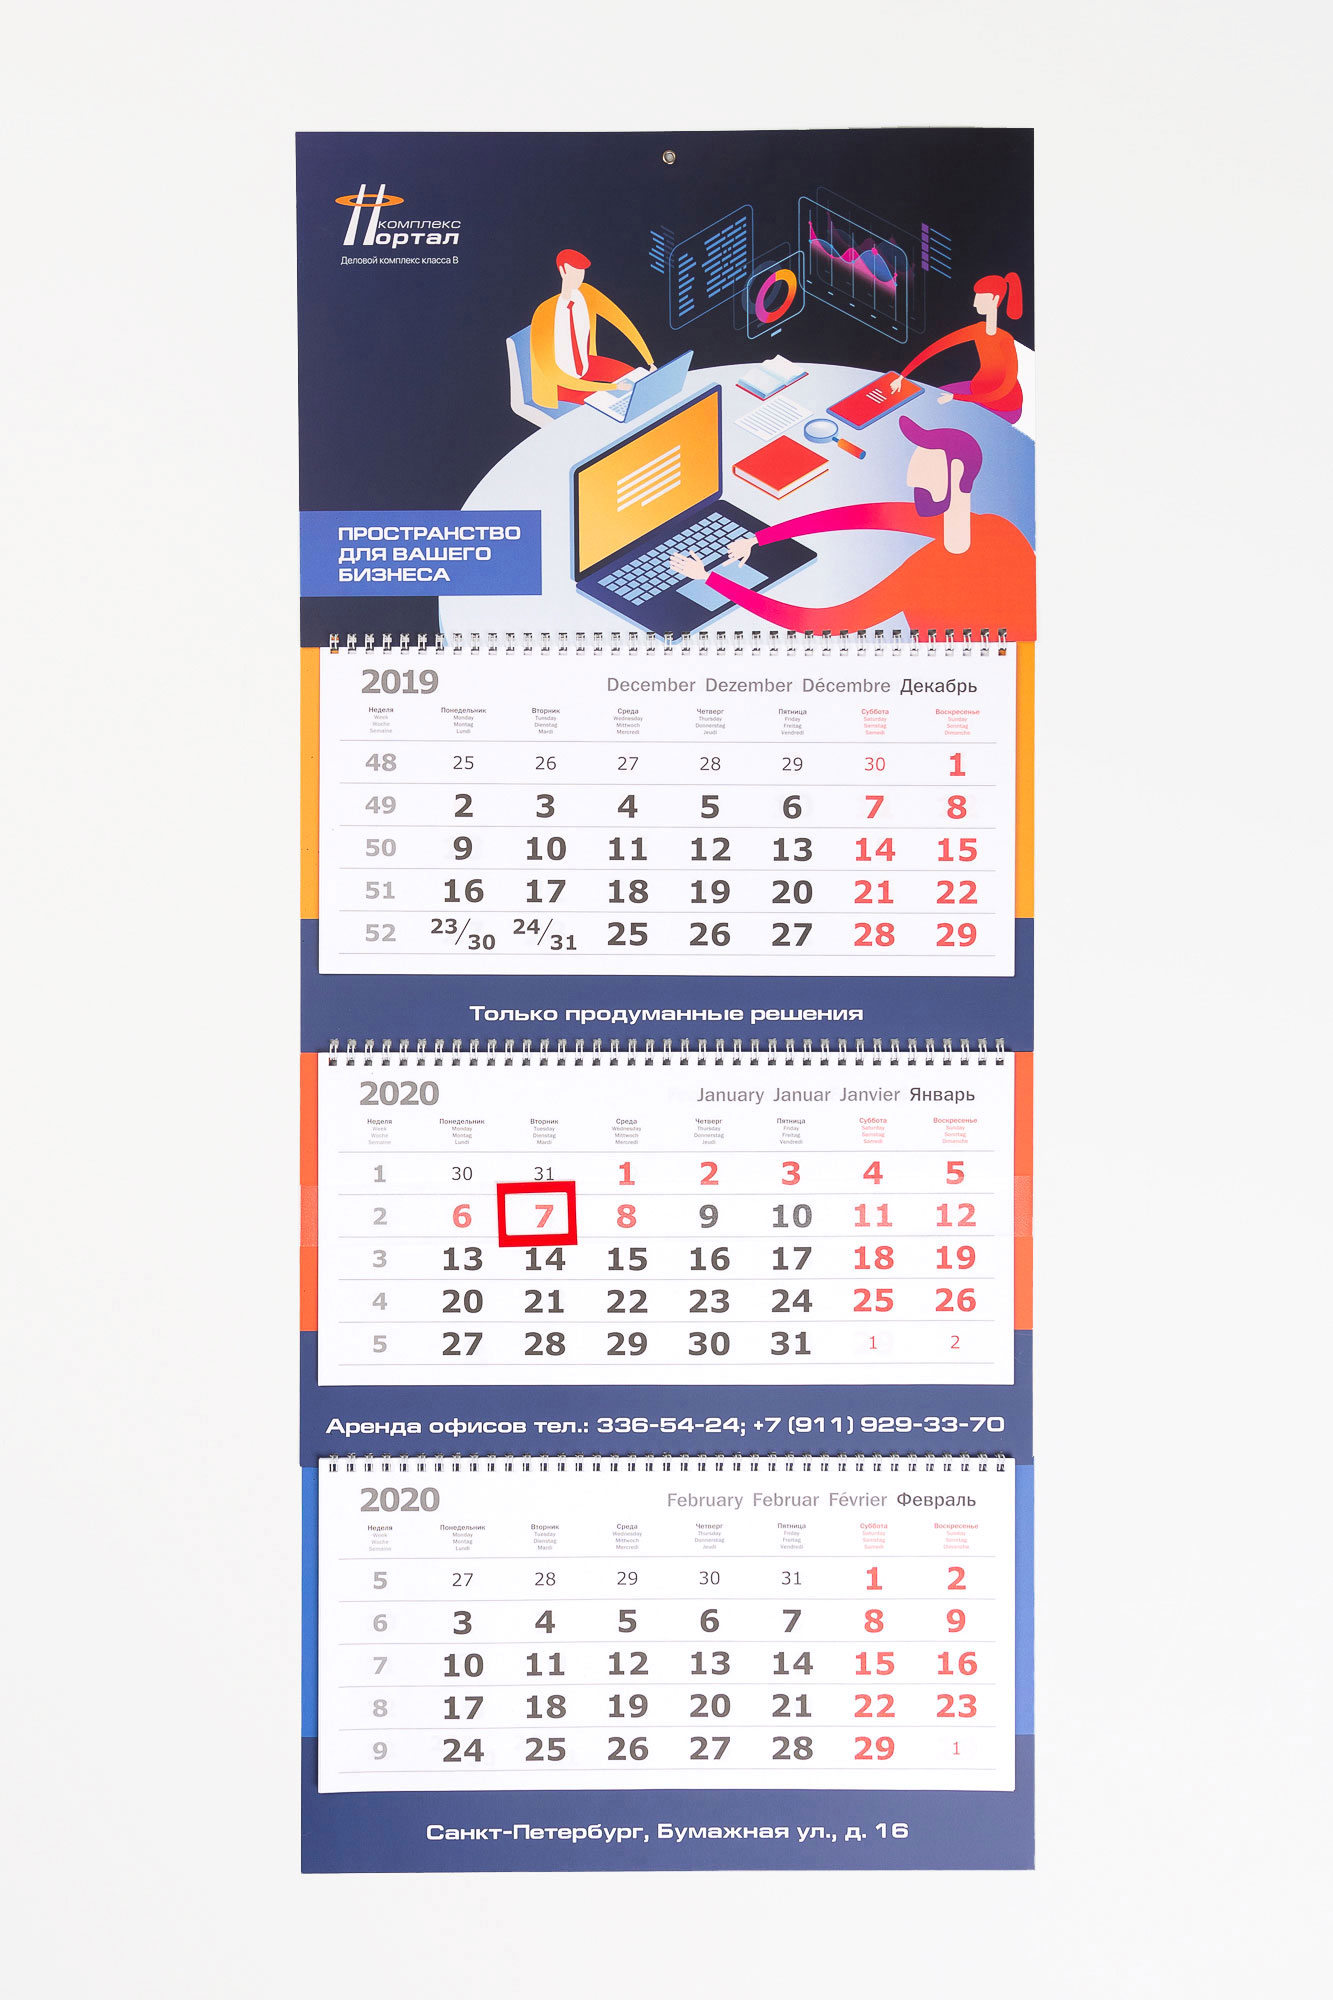 Создание дизайна и методы печати карманных календарей